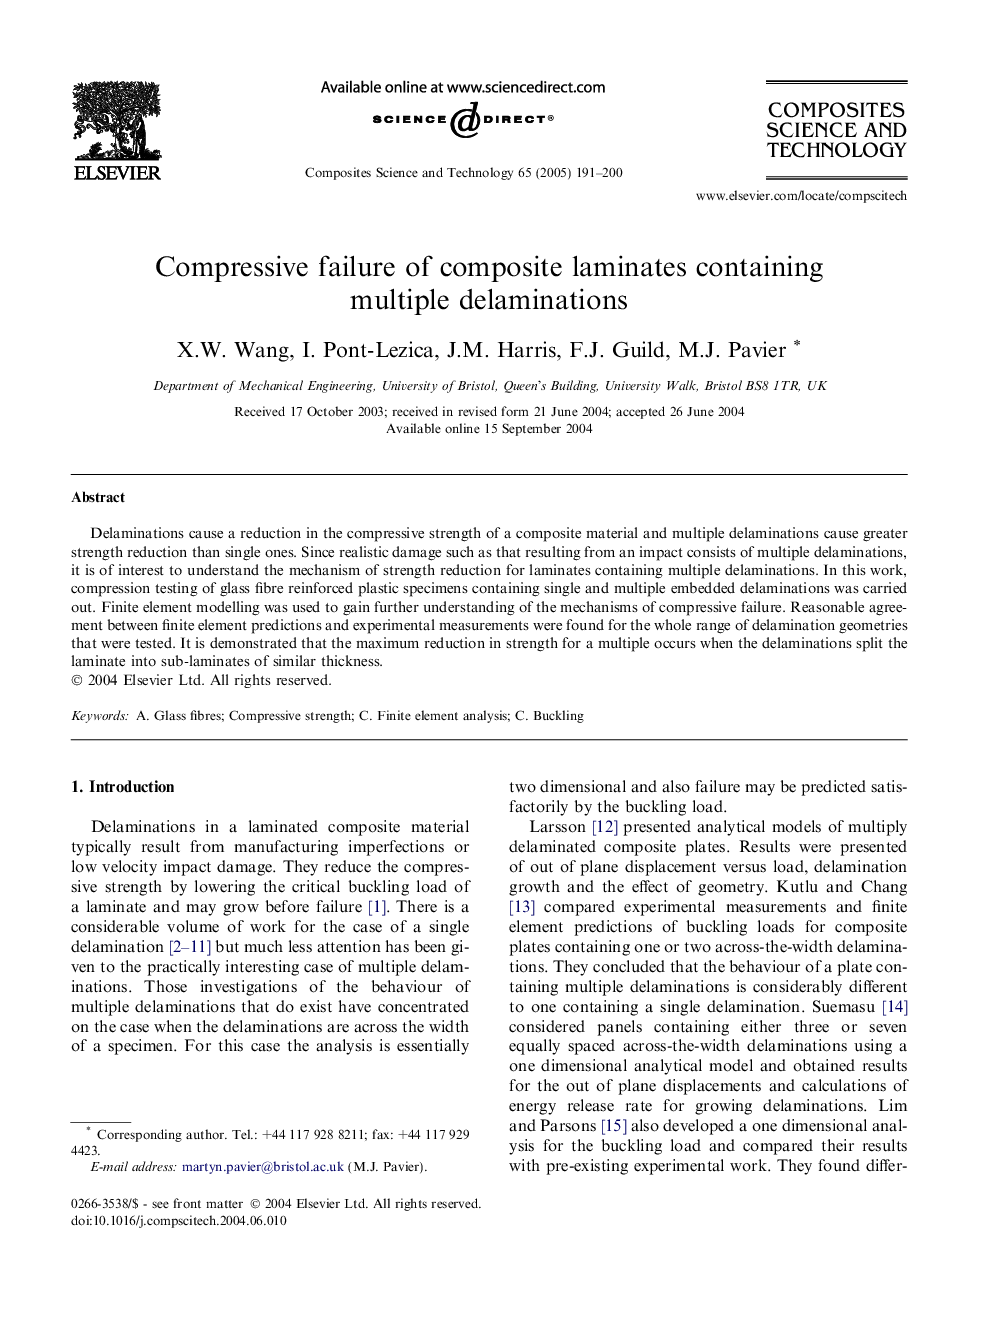 Compressive failure of composite laminates containing multiple delaminations